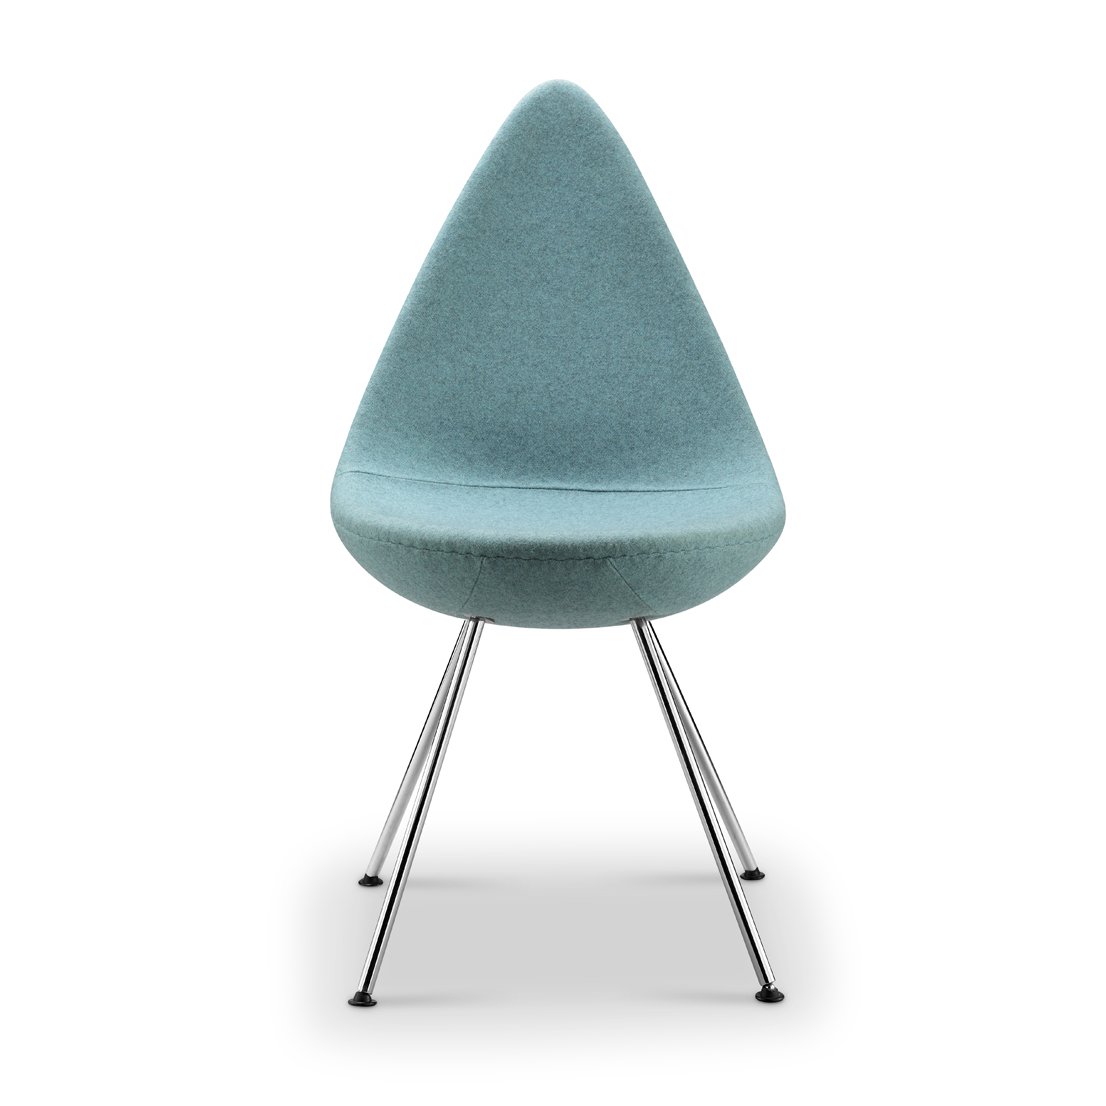 Replica Arne Jacobsen Drop Chair - blue